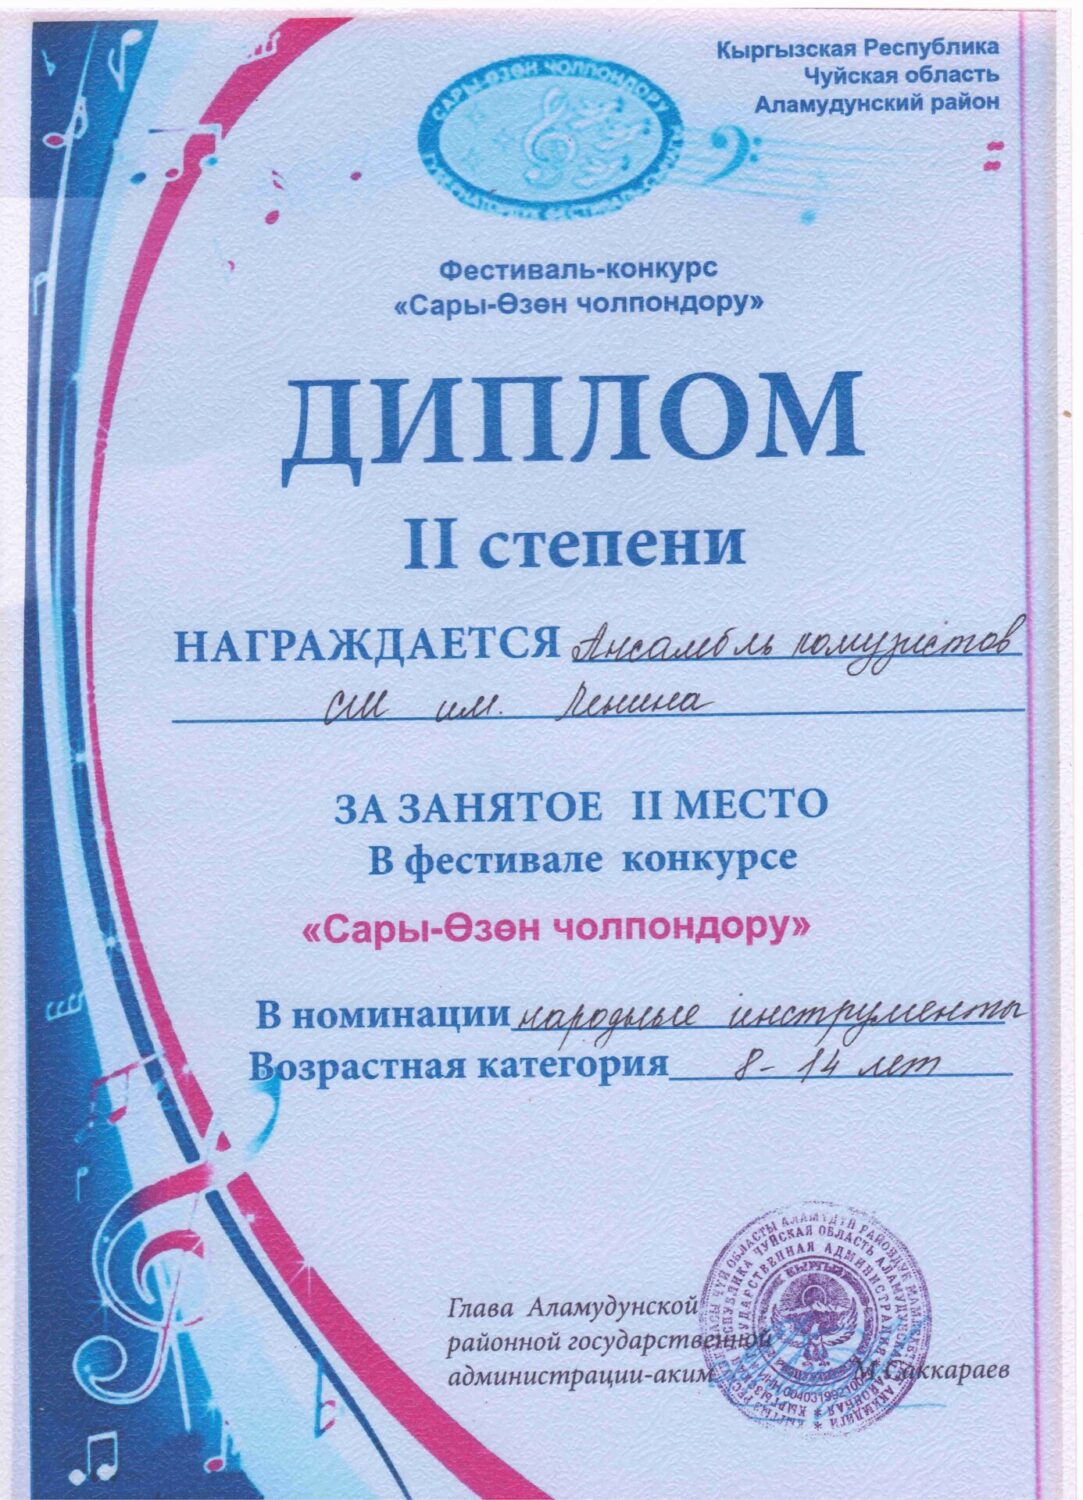 сертификаты и дипломы школы